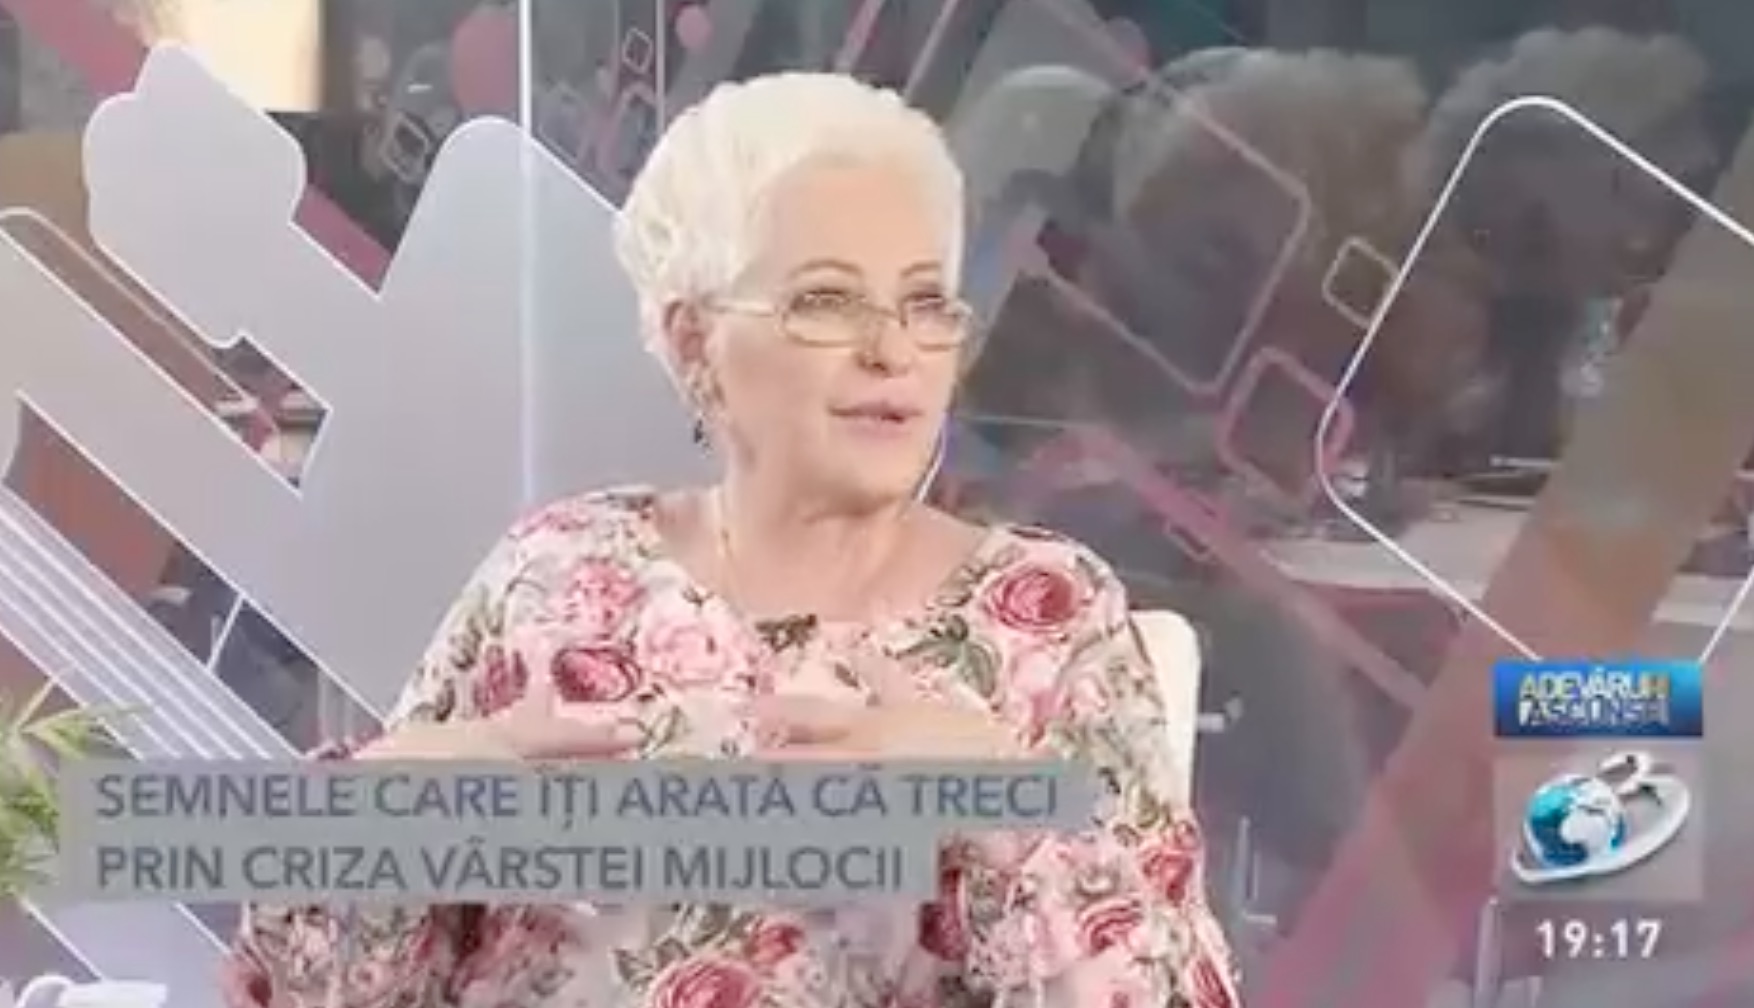 Lidia Fecioru a vorbit la „Adevăruri ascunse”, de la Antena 3, despre criza vârstei mijlocii la femei